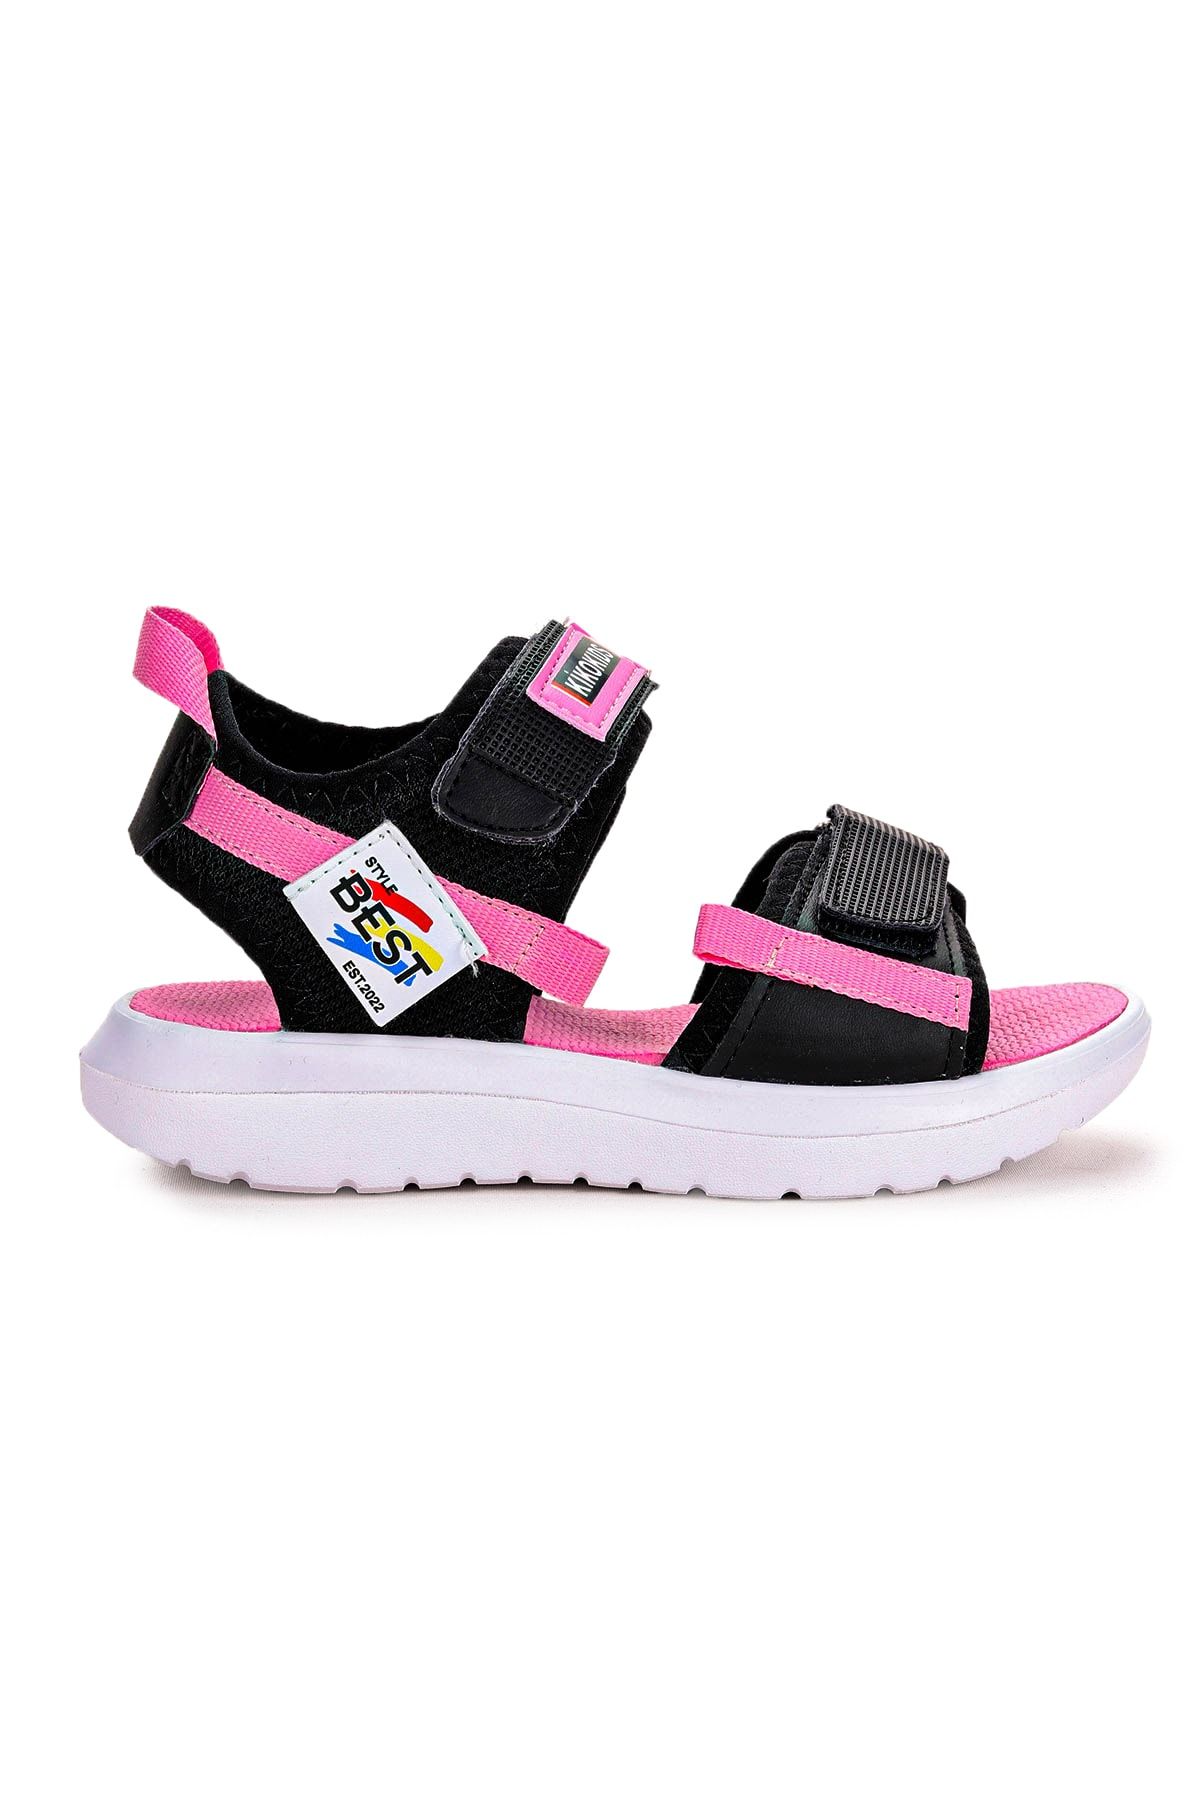 Kiko Kids Cırtlı Yürüyüş Kız/erkek Çocuk Sandalet 200